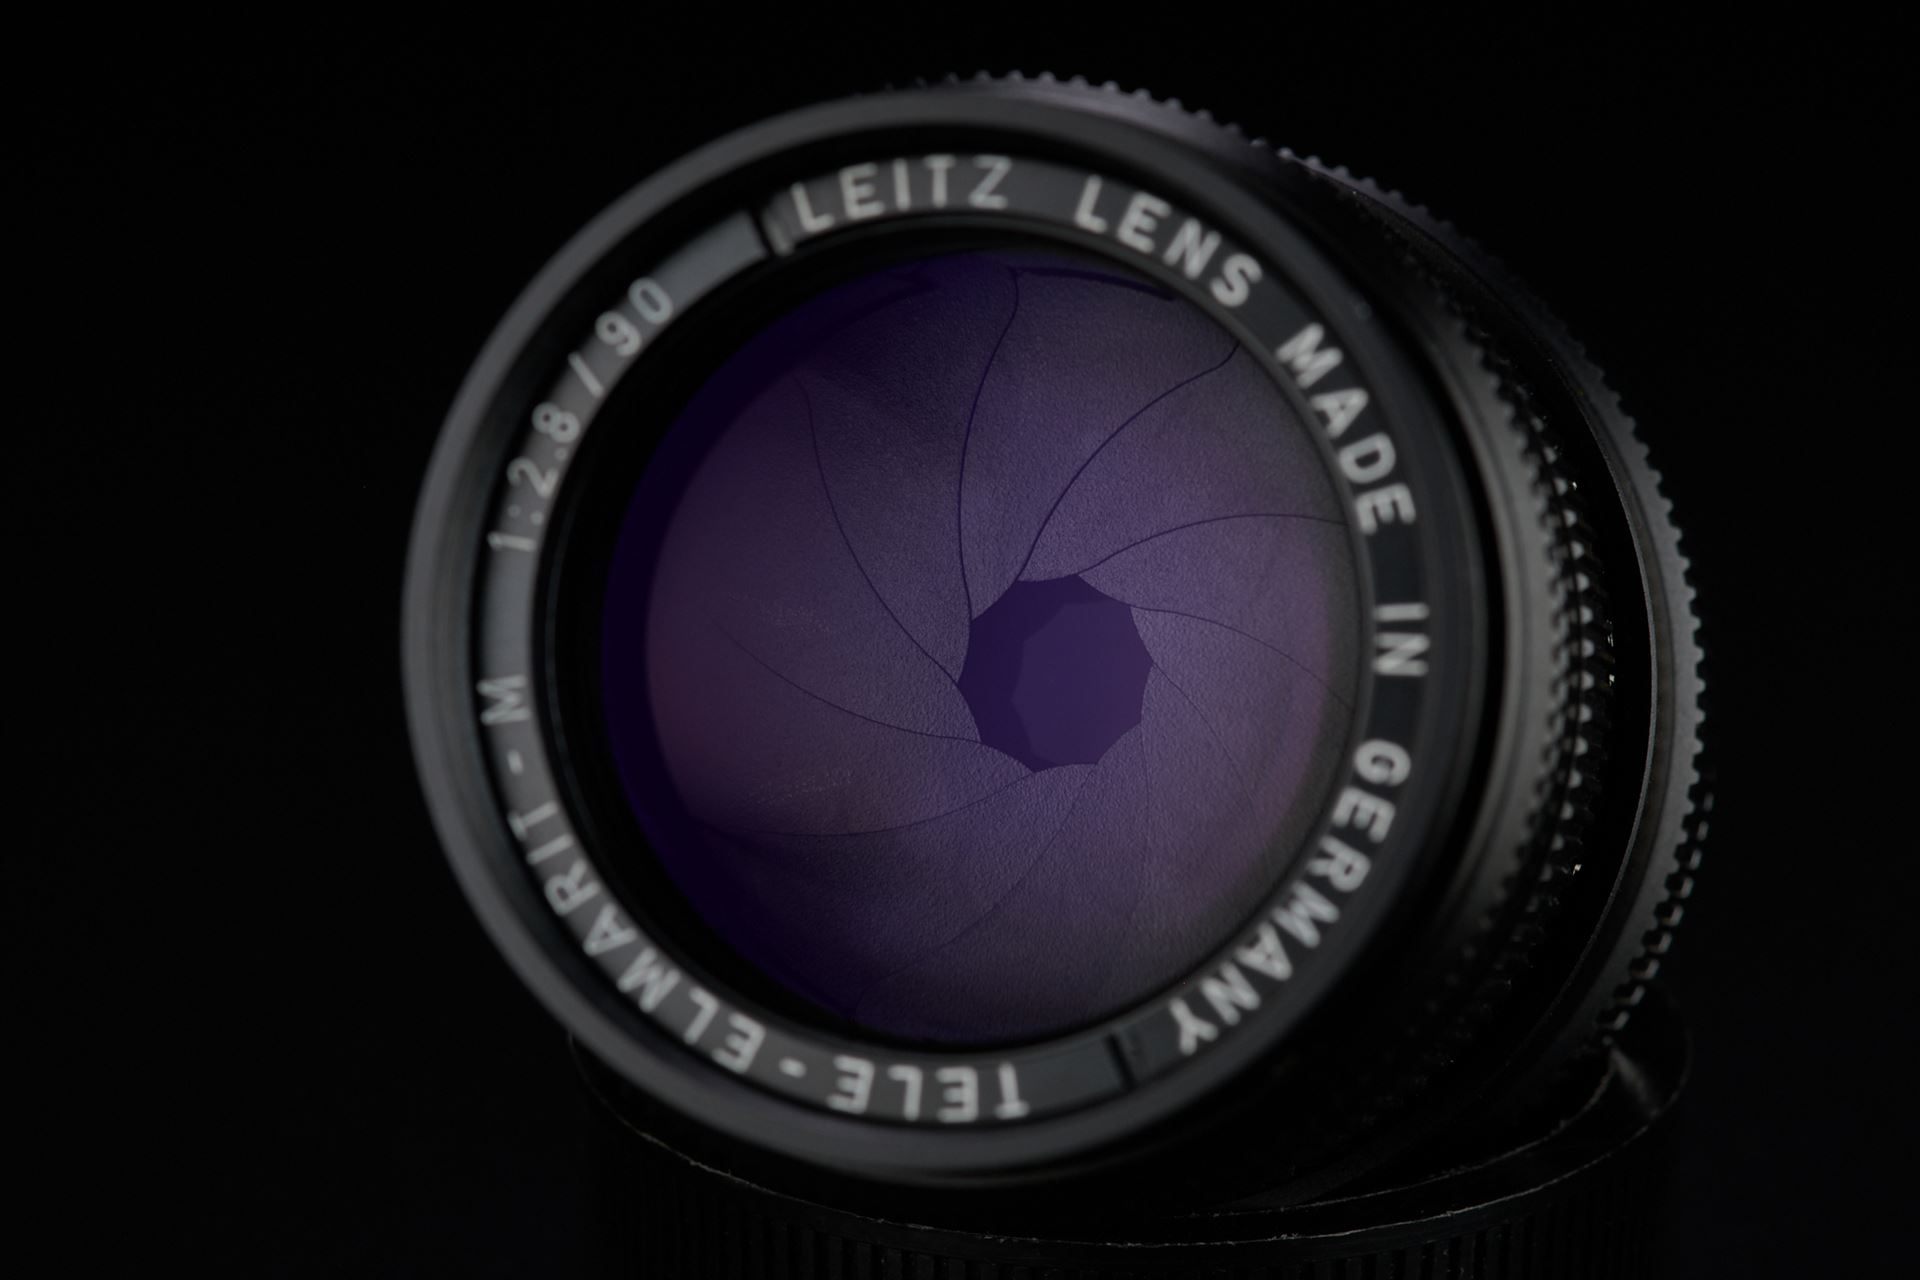 Picture of Leica Tele-elmarit-m 90mm f/2.8 Black